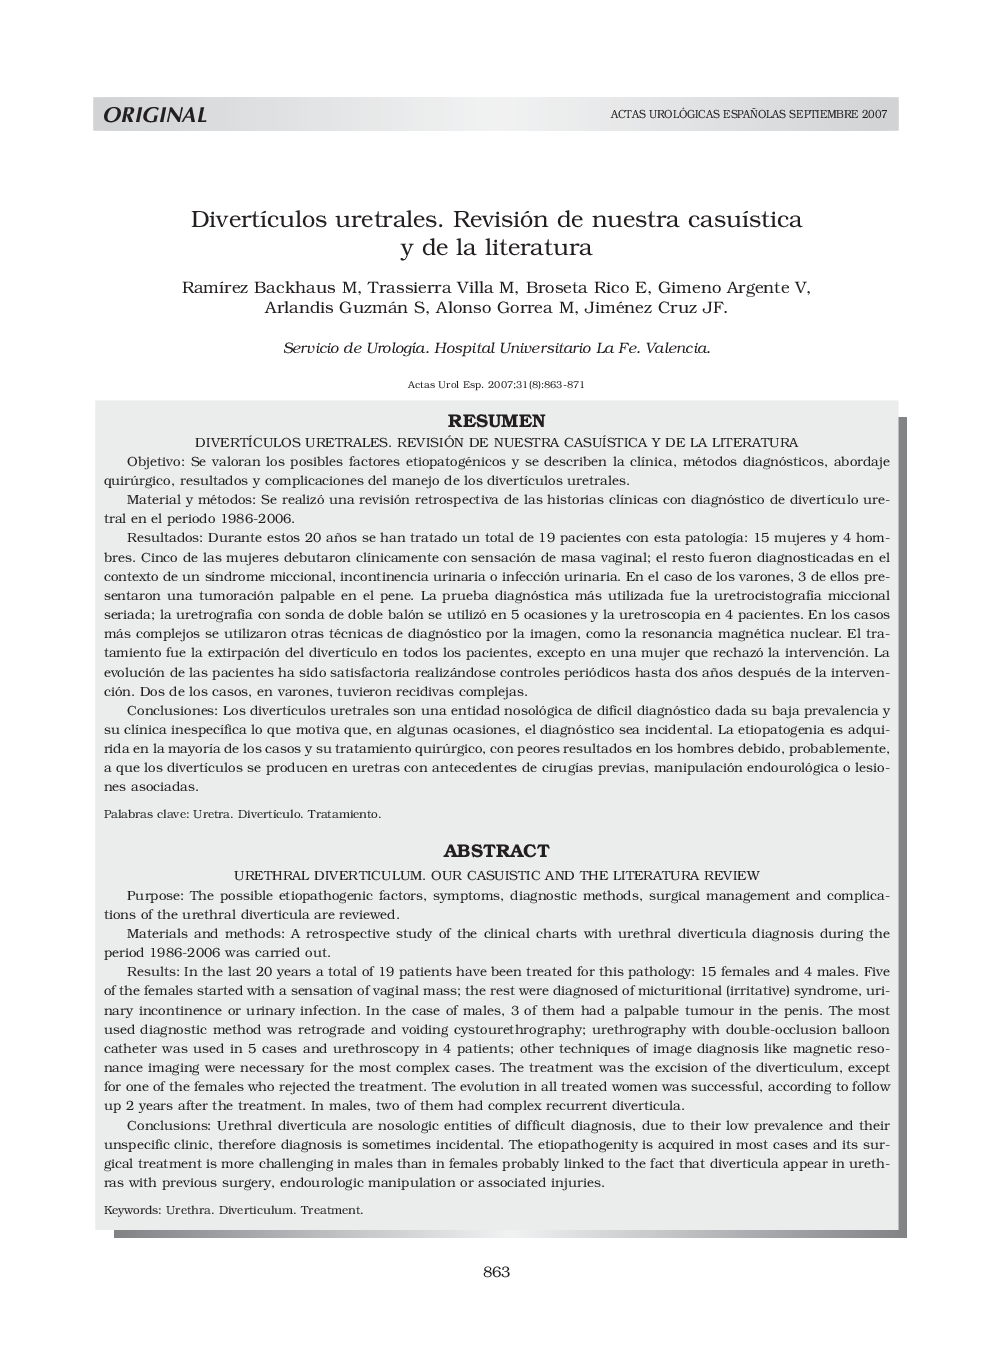 DivertÃ­culos uretrales. Revisión de nuestra casuÃ­stica y de la literaturaUrethral diverticulum. our casuistic and the literatura review